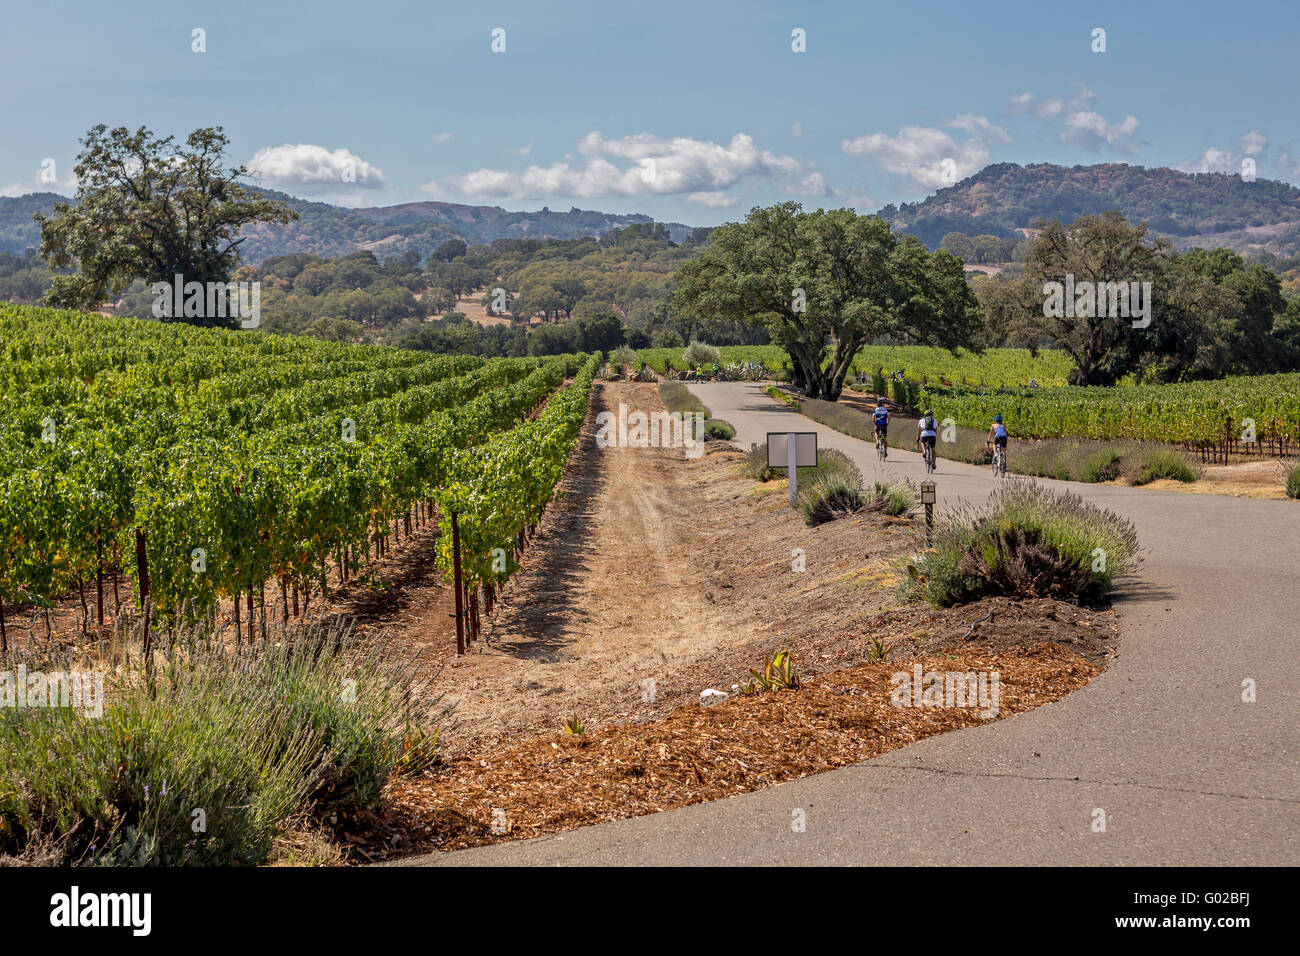 Les touristes, tour en vélo, entreprise vinicole Hanna, Healdsburg, Alexander Valley, Sonoma County, Californie Banque D'Images